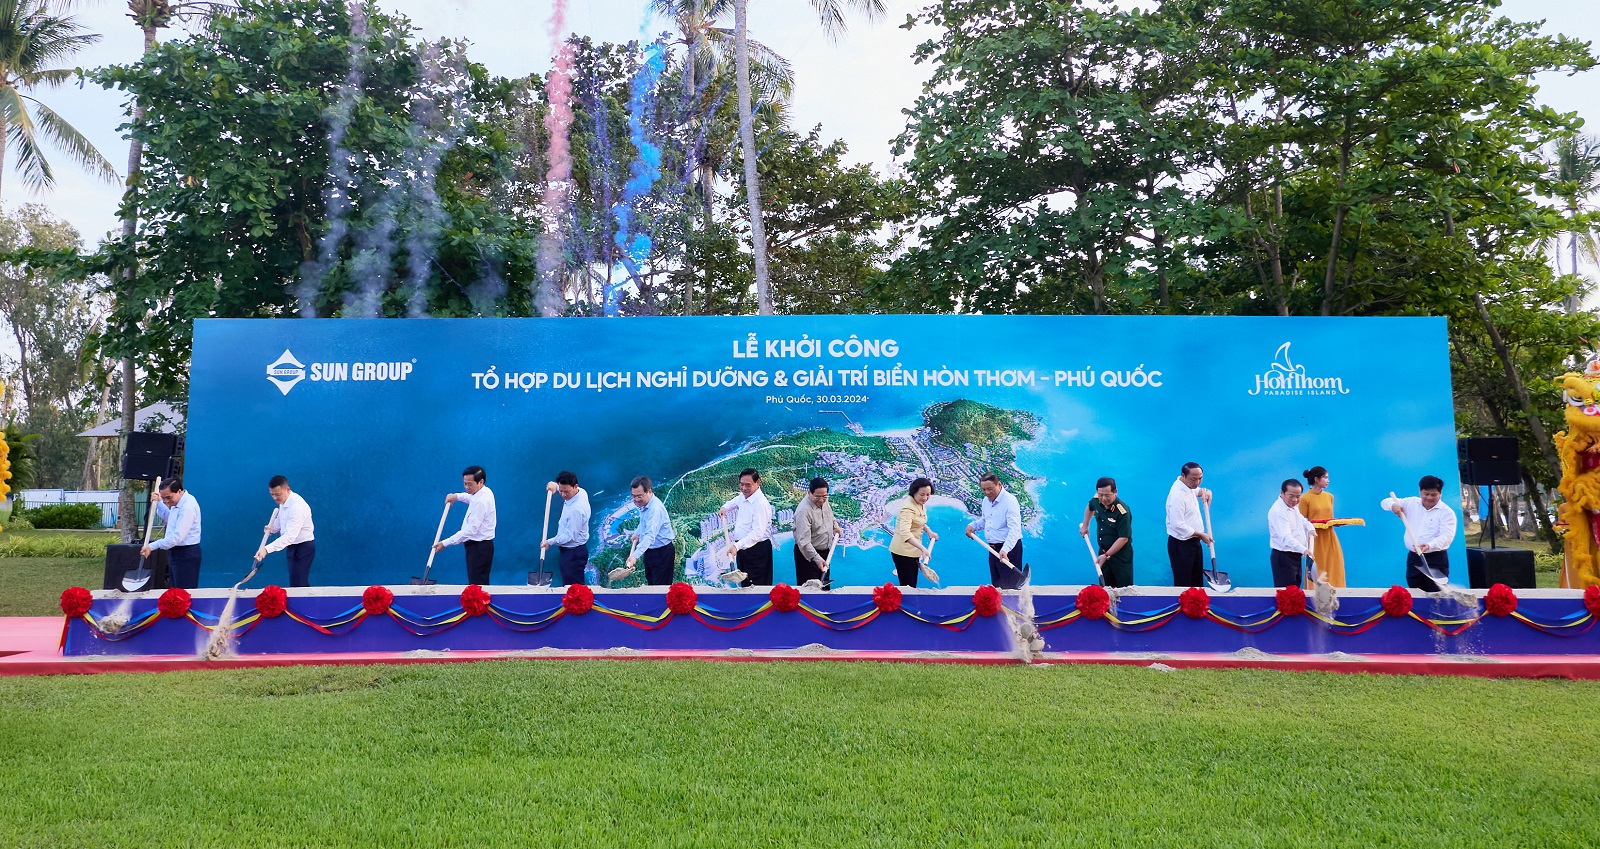 Sun Group khởi công tổ hợp du lịch nghỉ dưỡng và giải trí biển 50.000 tỷ đồng tại Hòn Thơm - Phú Quốc